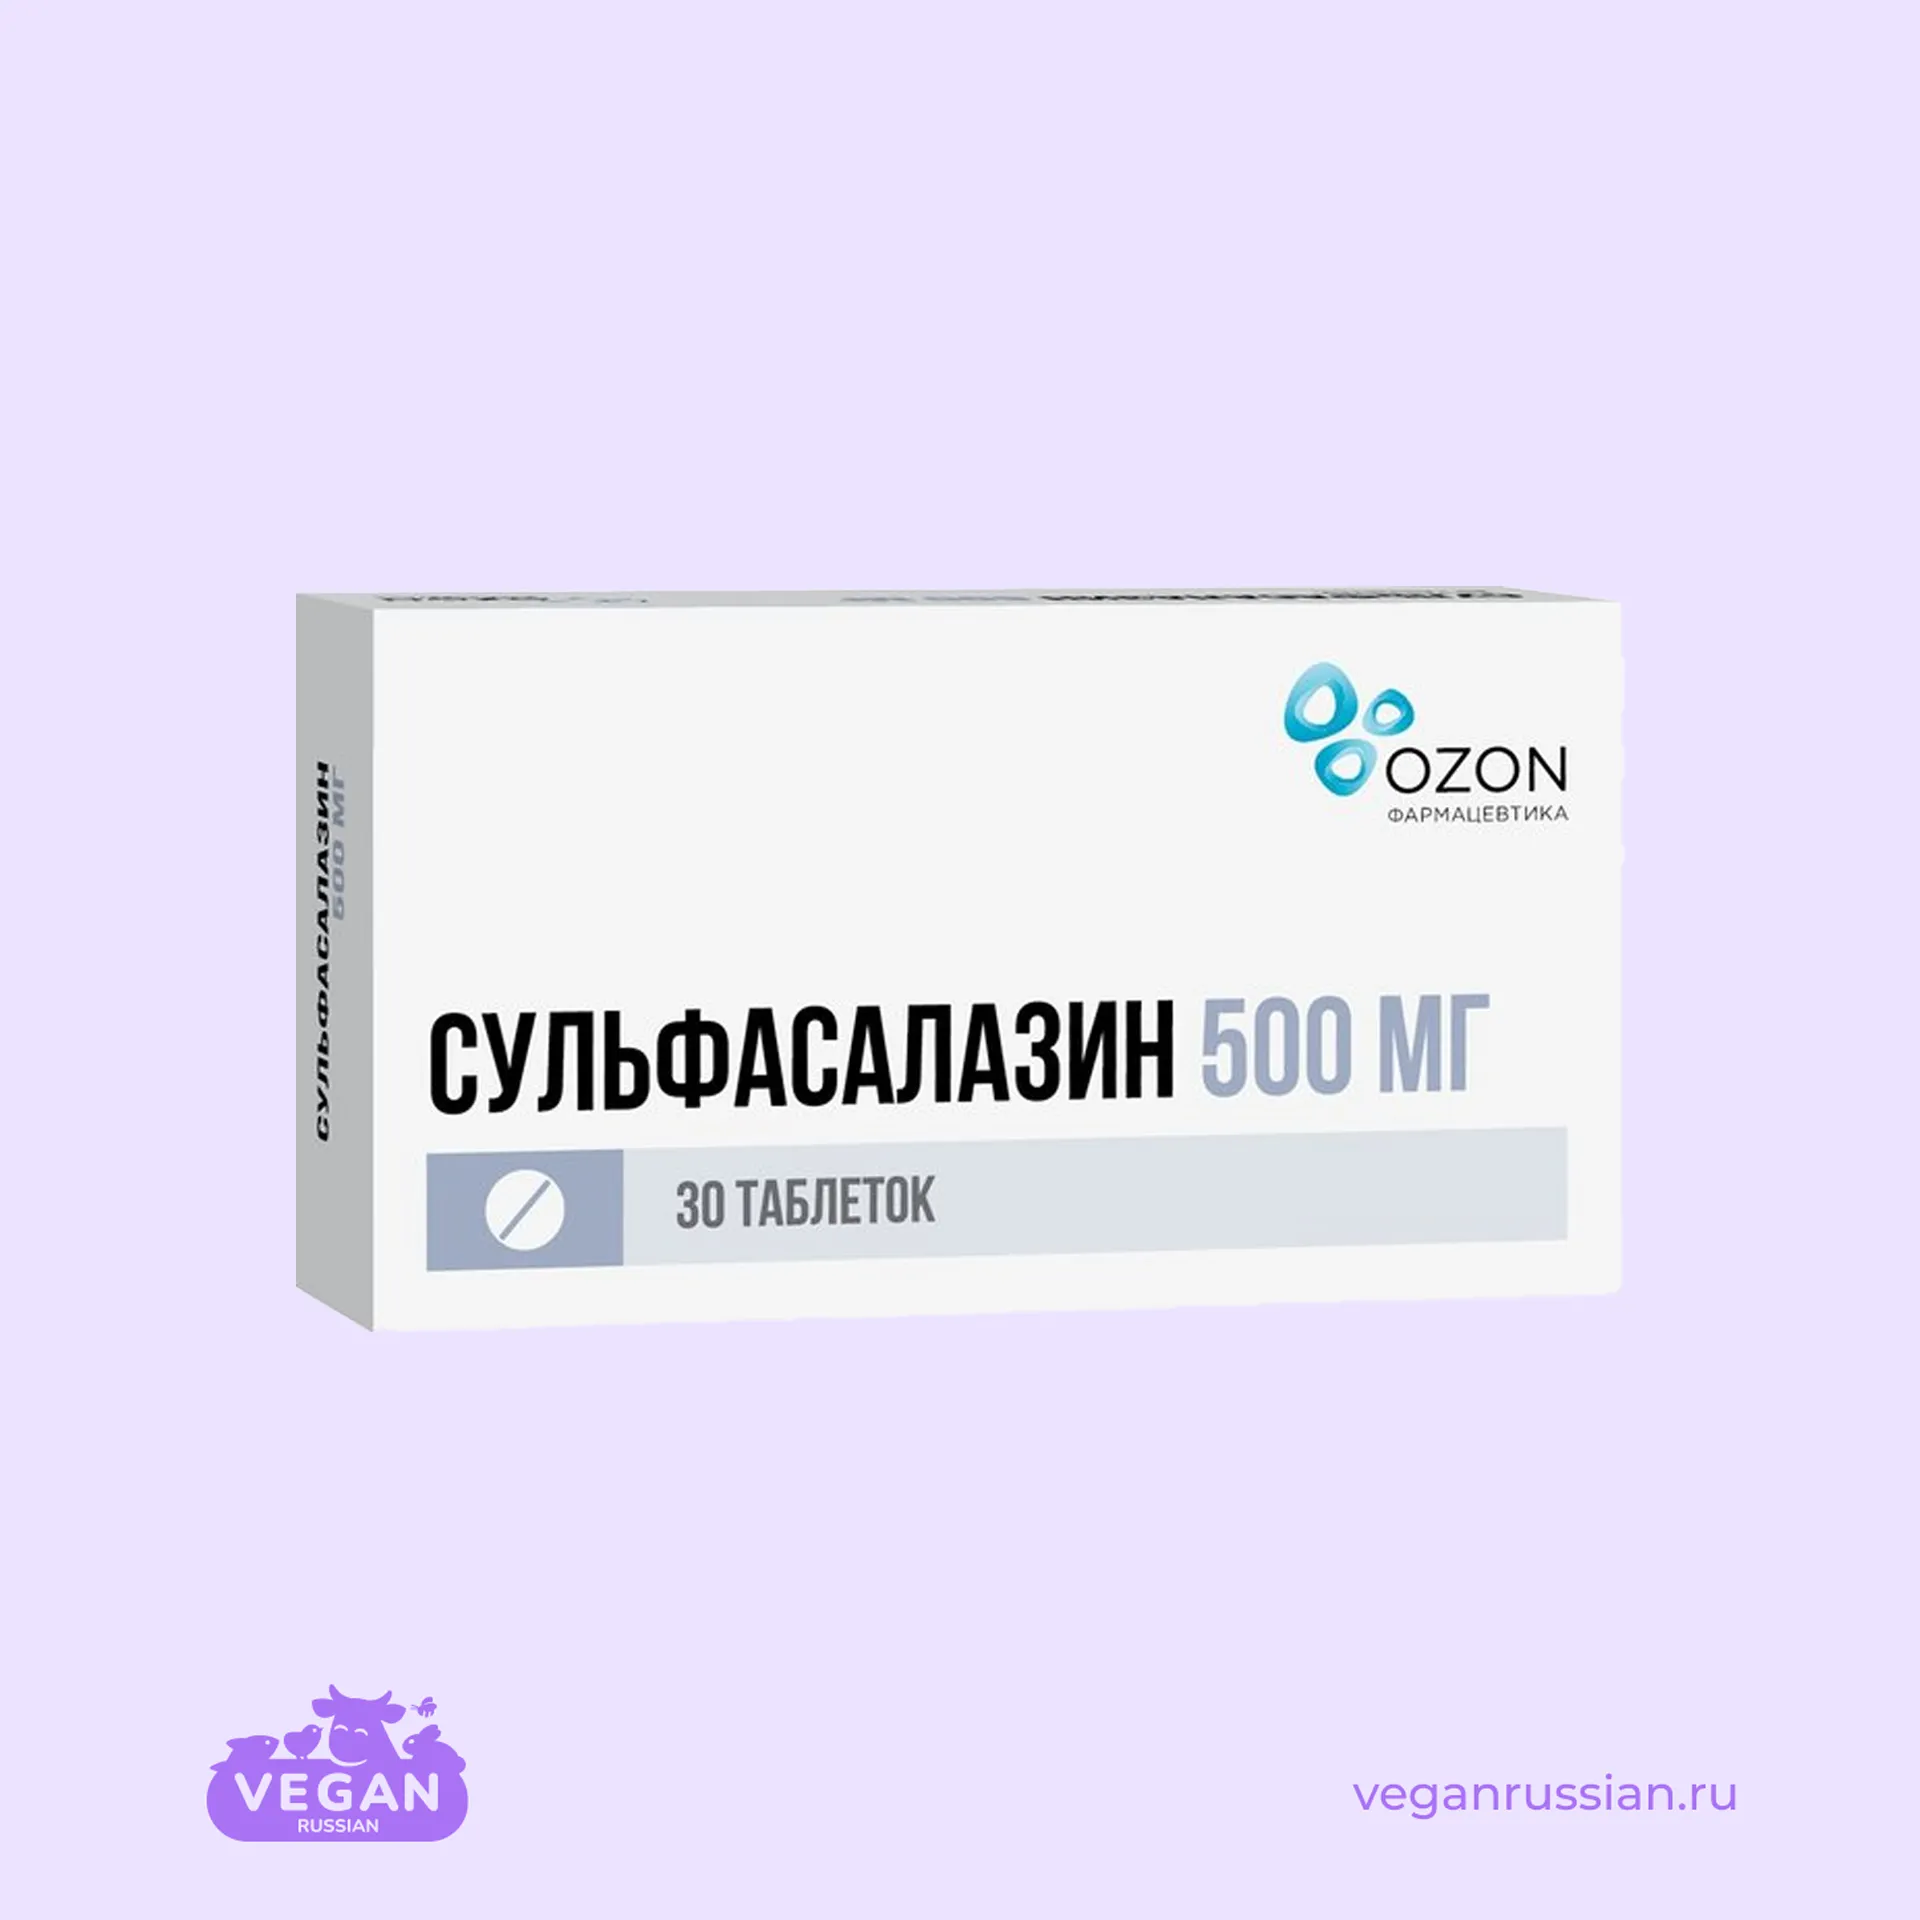 Сульфасалазин Озон 30-50 шт 500 мг